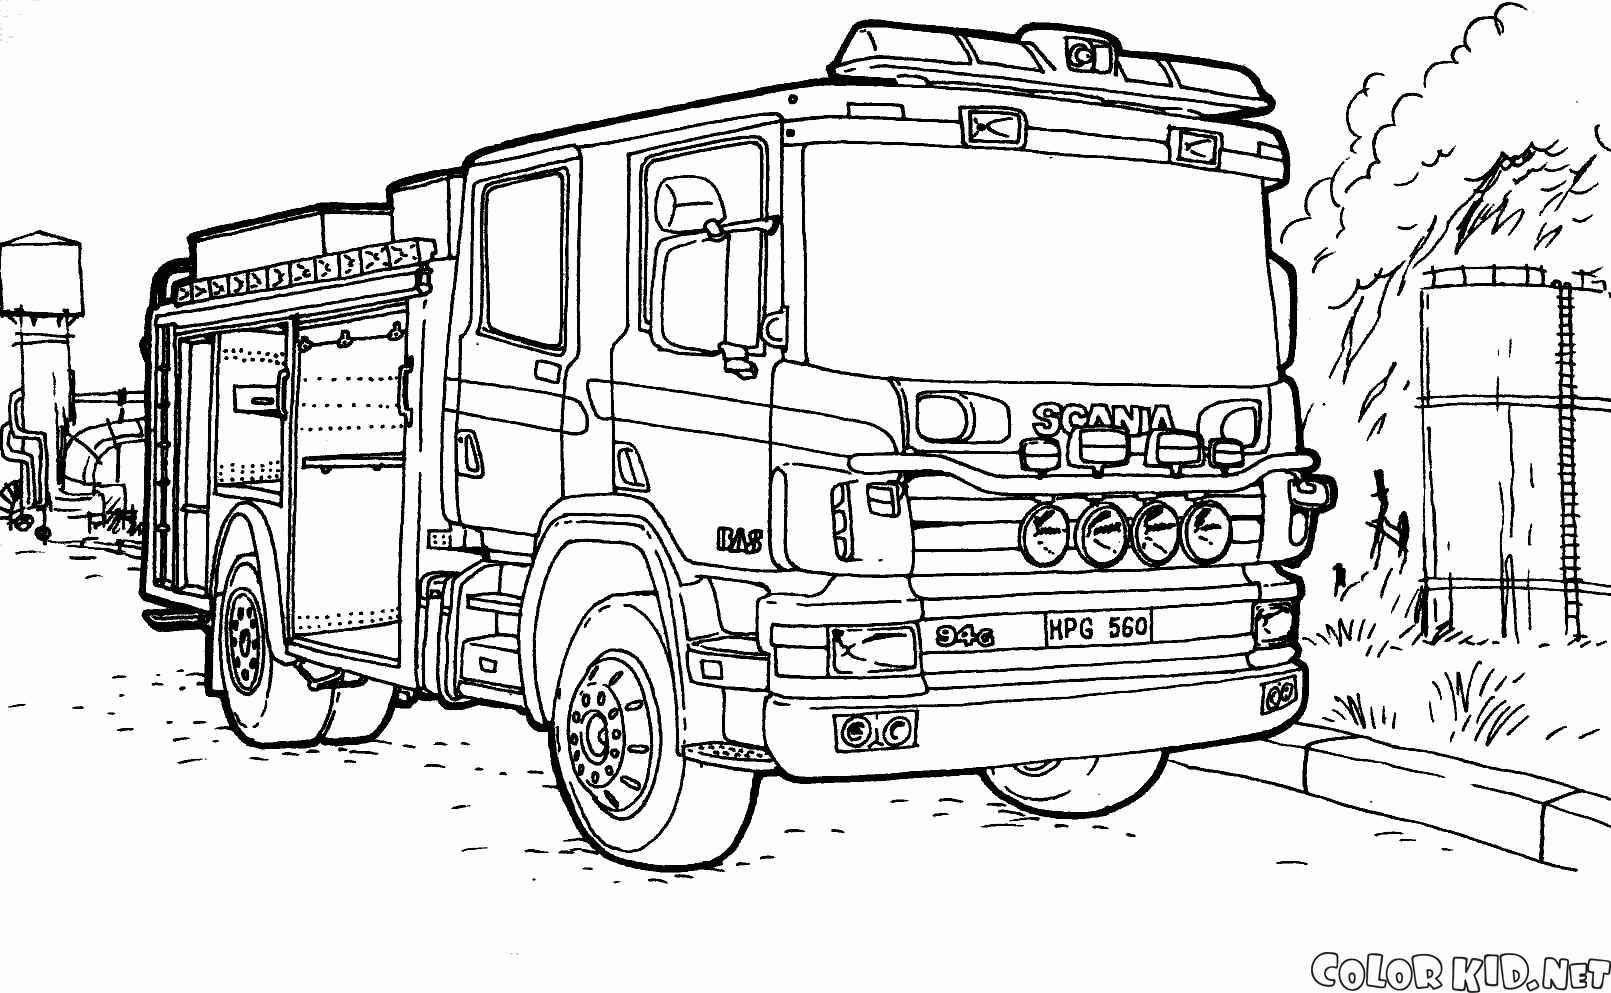 Camion dei pompieri Scania